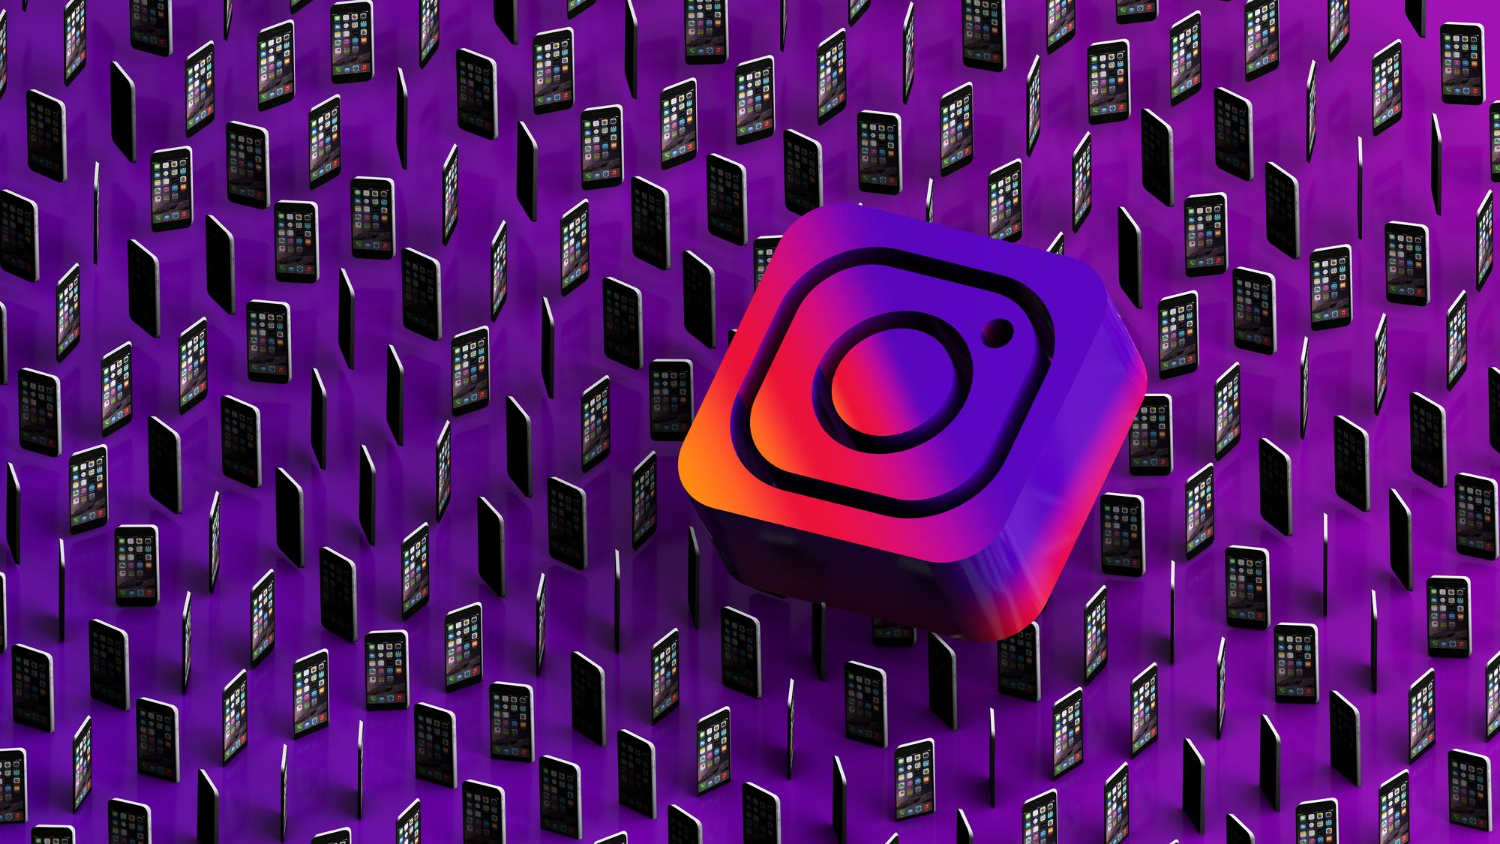 Logo Instagrama w 3D